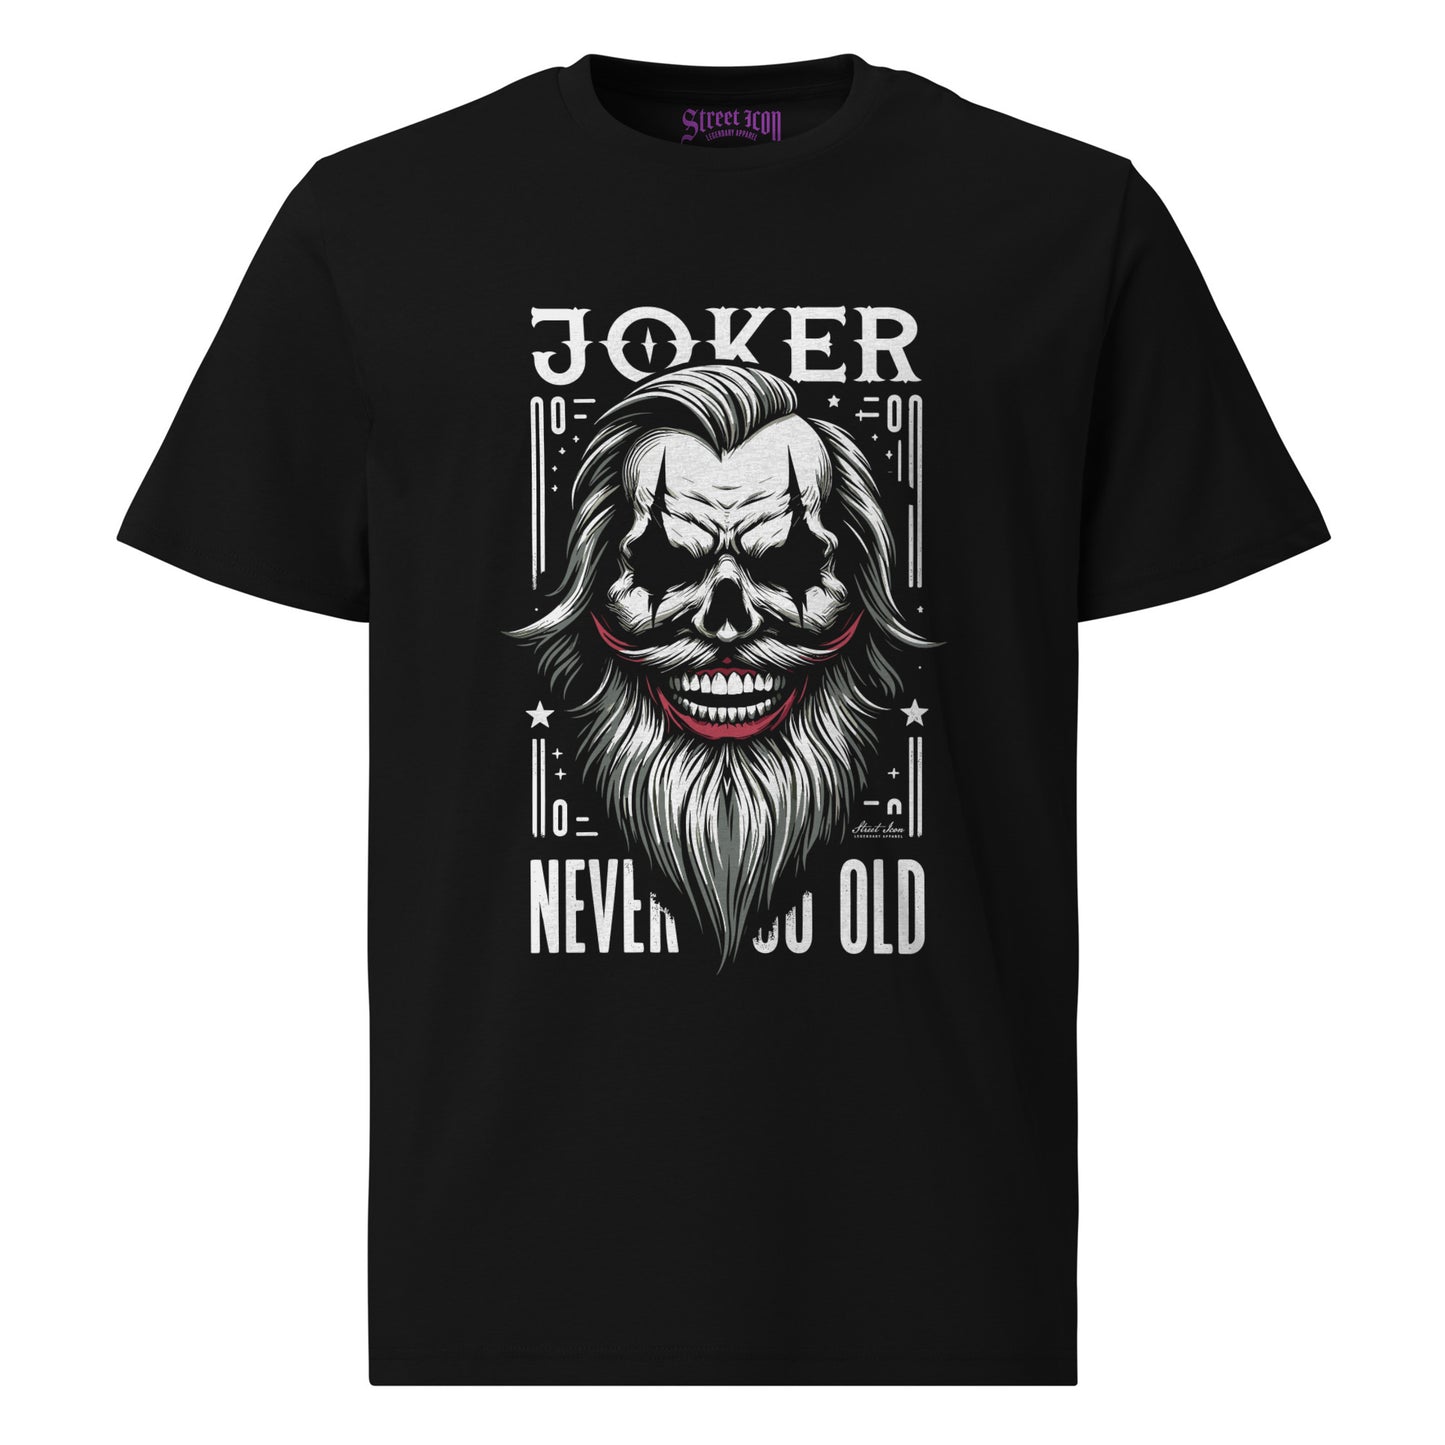 The Joker - T-Shirt